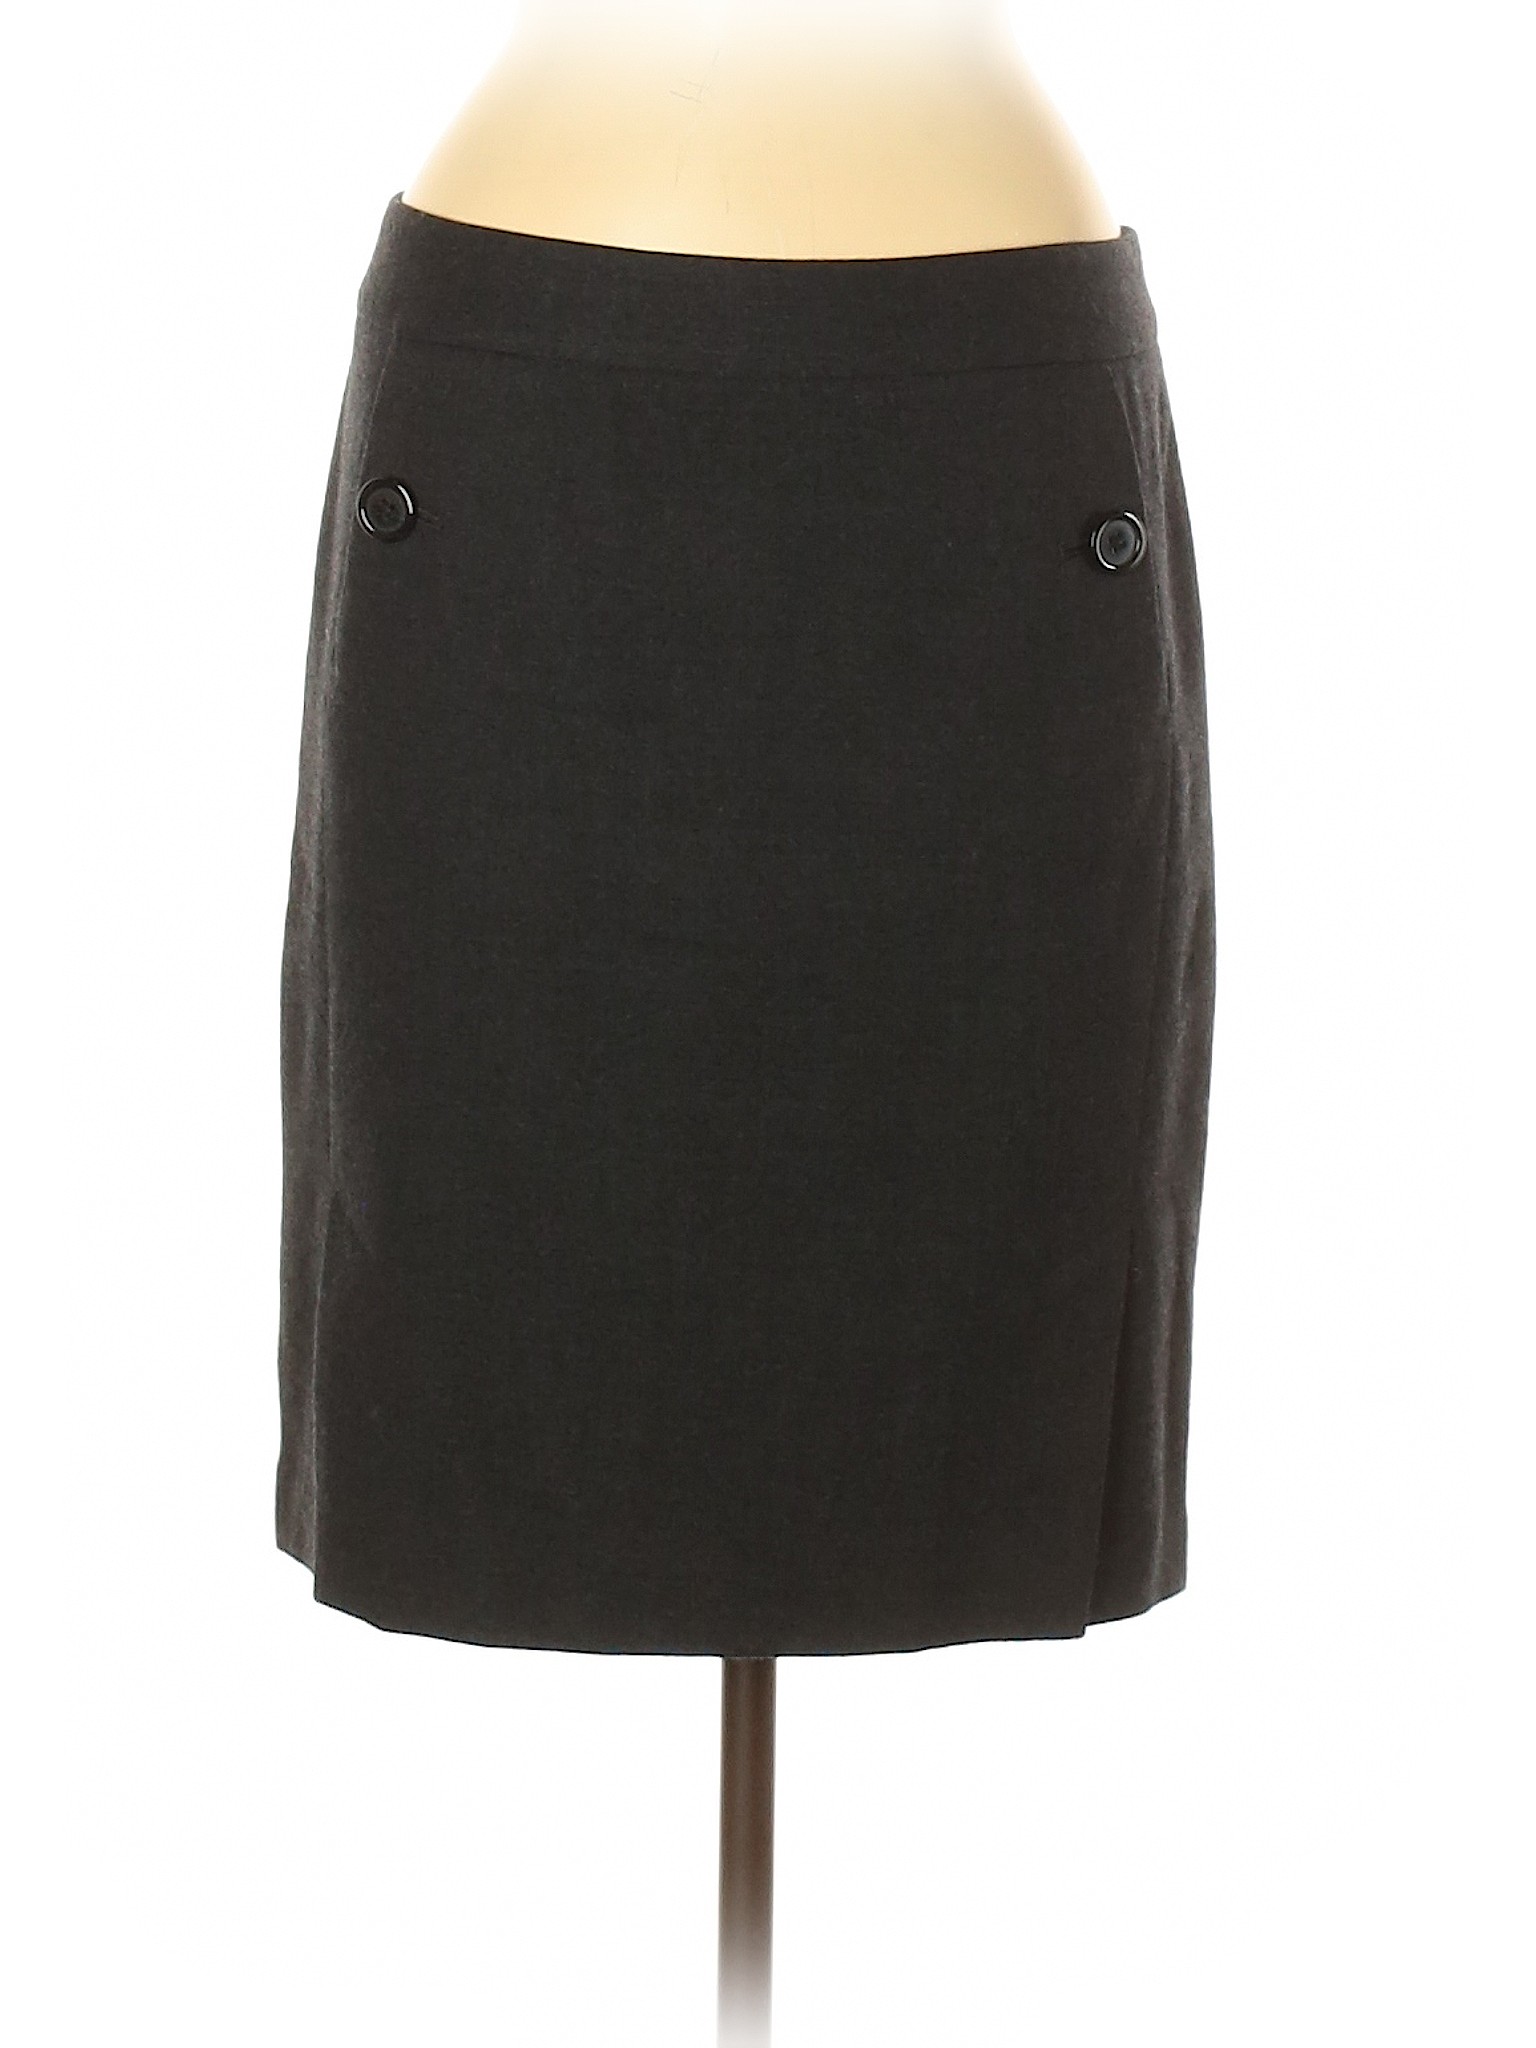 The Limited Women Black Formal Skirt 6 | eBay